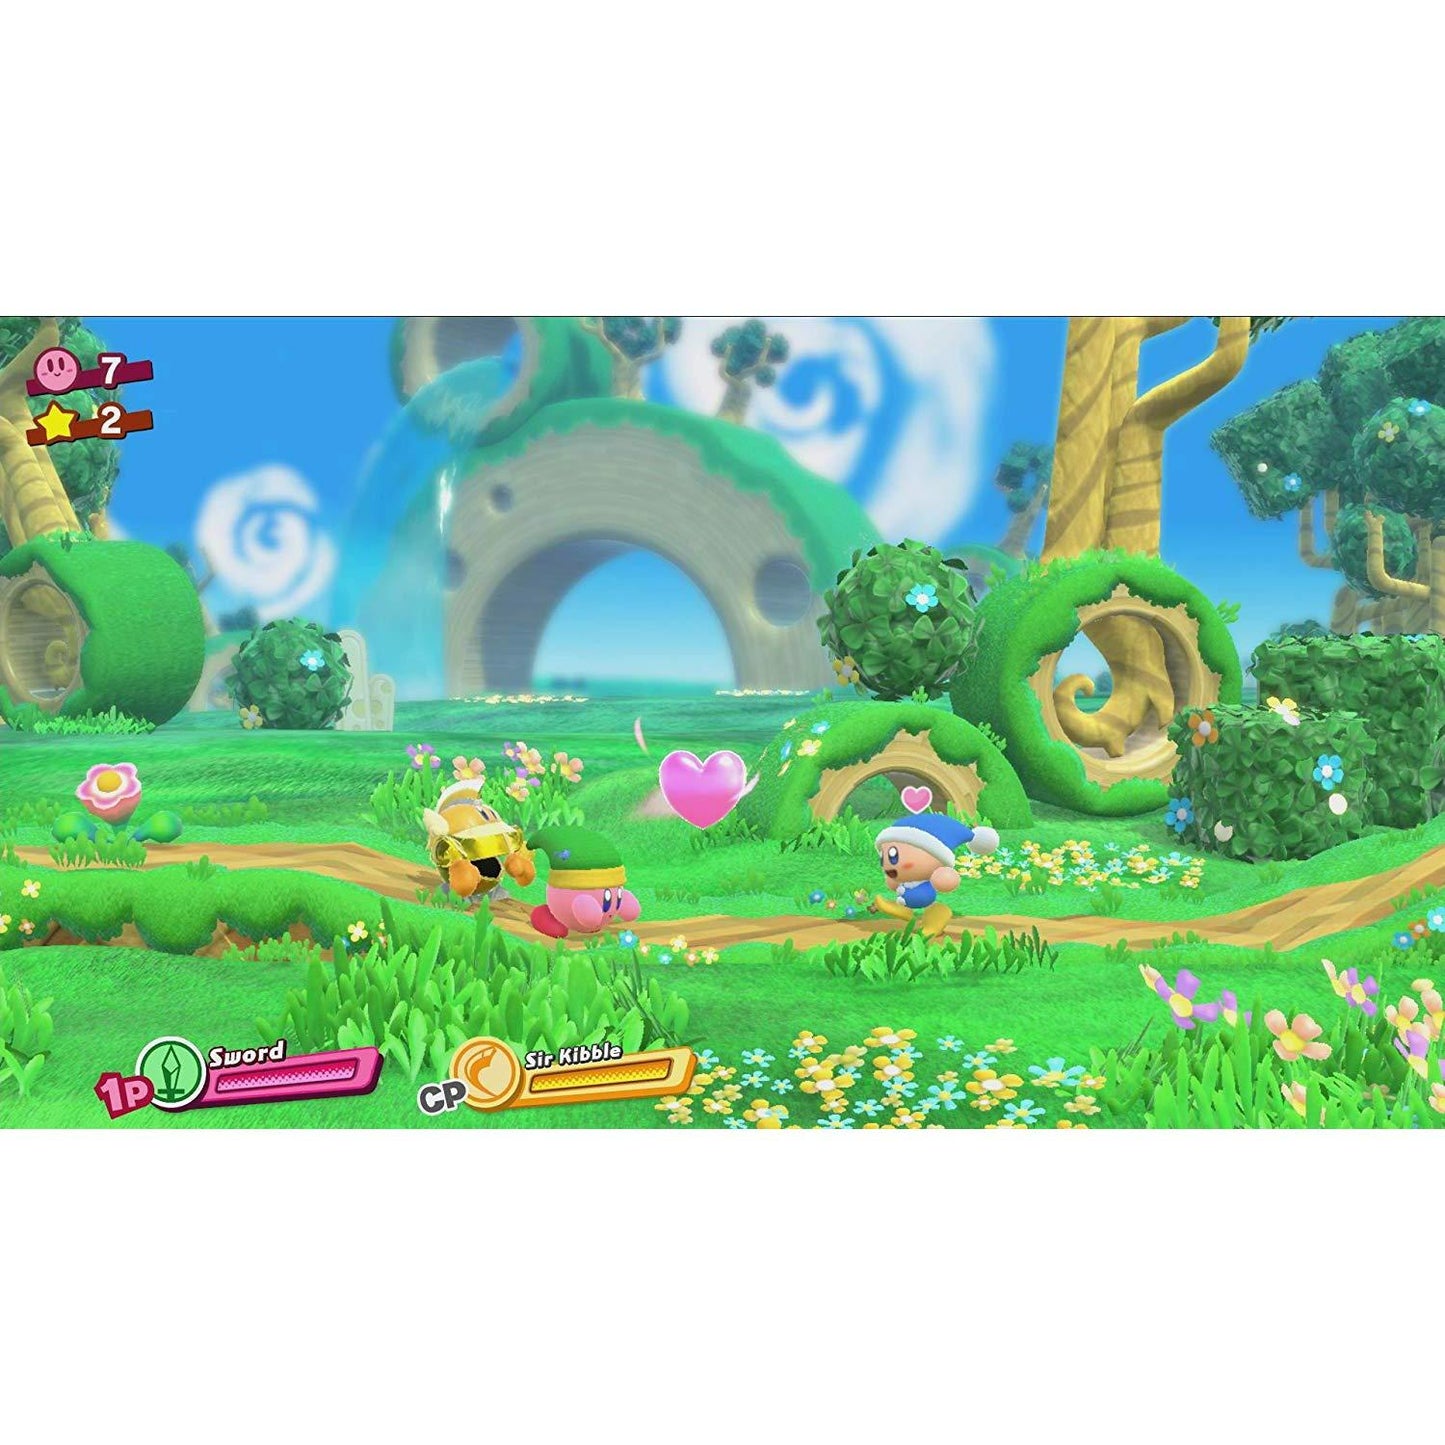 Kirby Star Allies Nintendo Switch